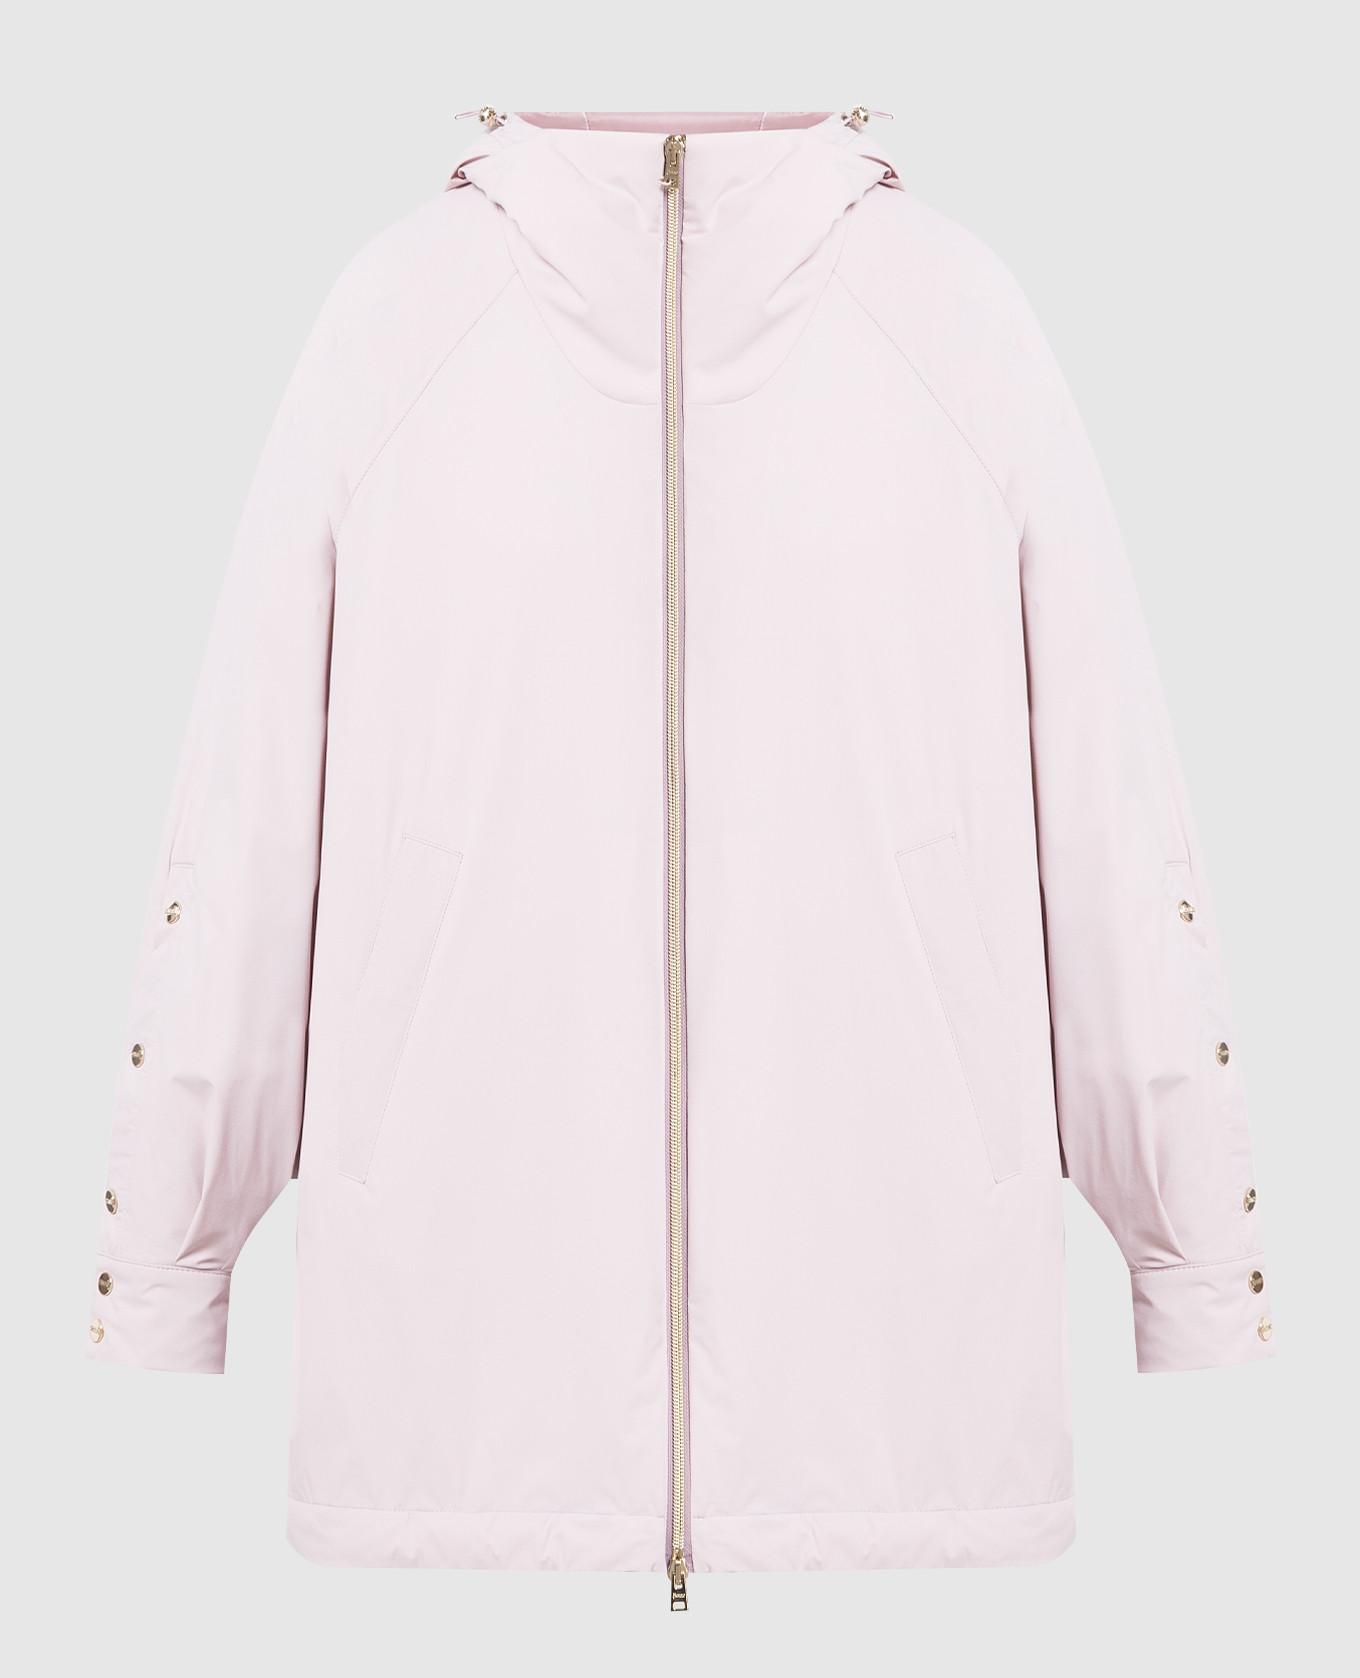 Pink jacket